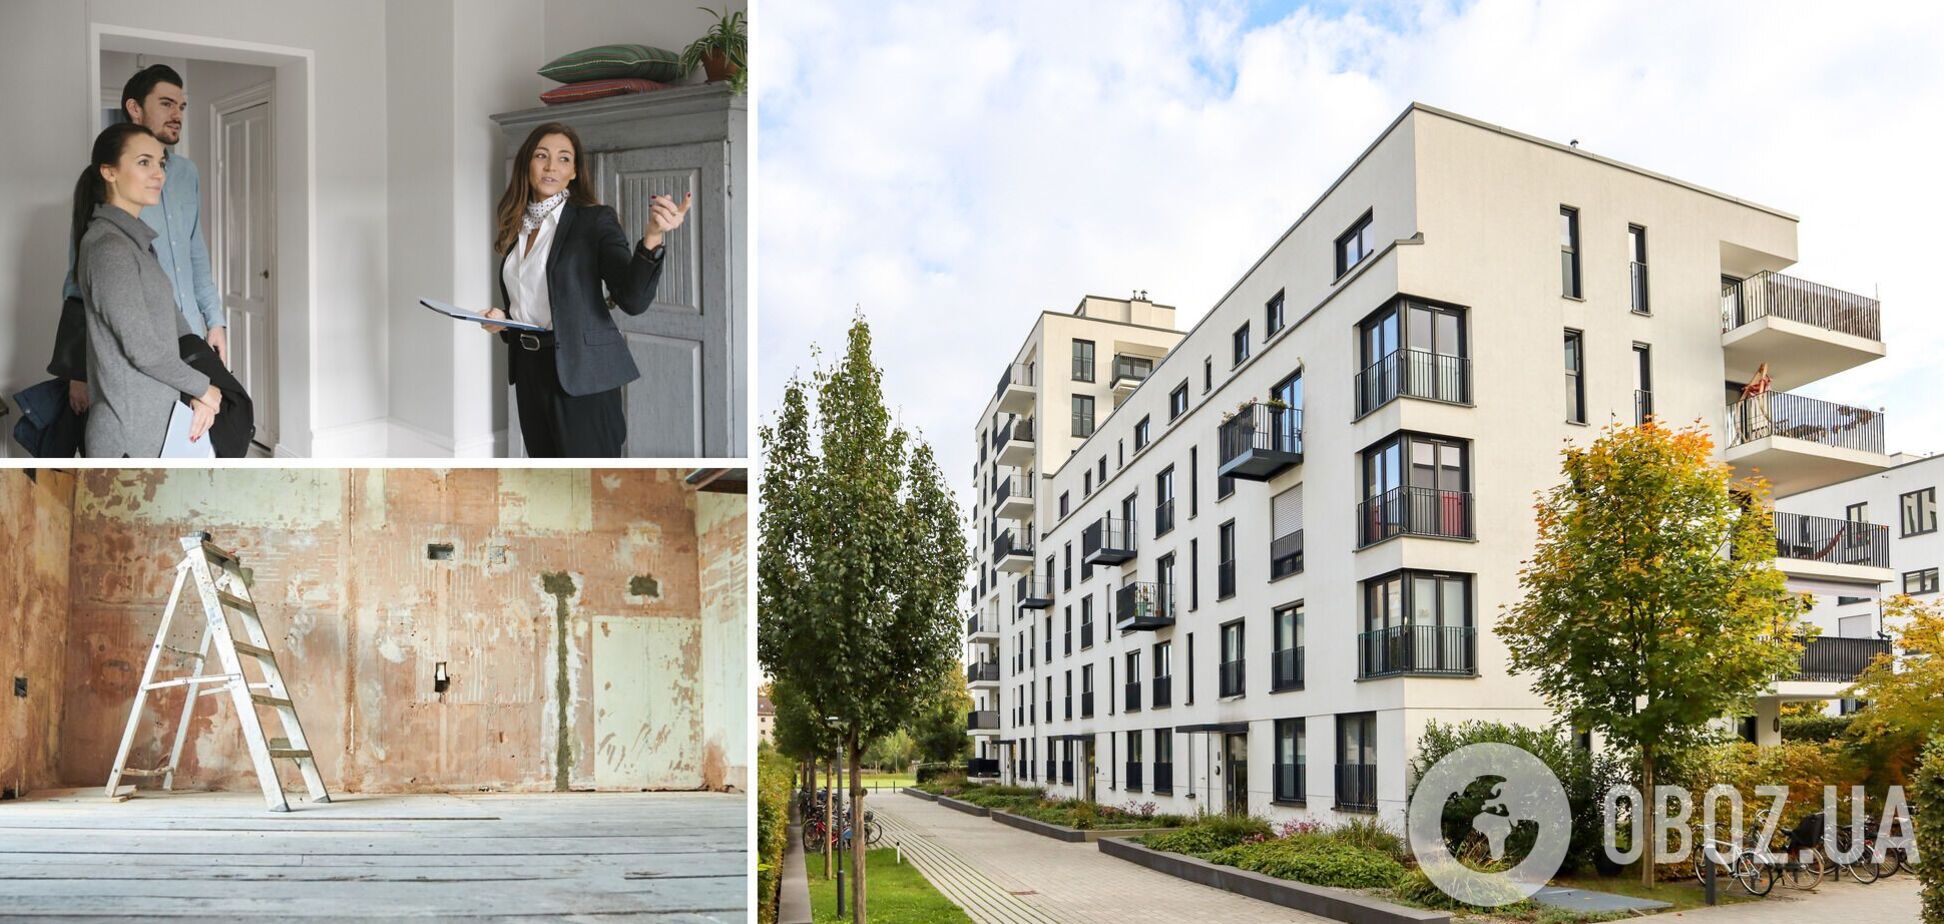 Ошибаются с ценами и предлагают несуществующее жилье: новые схемы продажи недвижимости во время войны в Украине